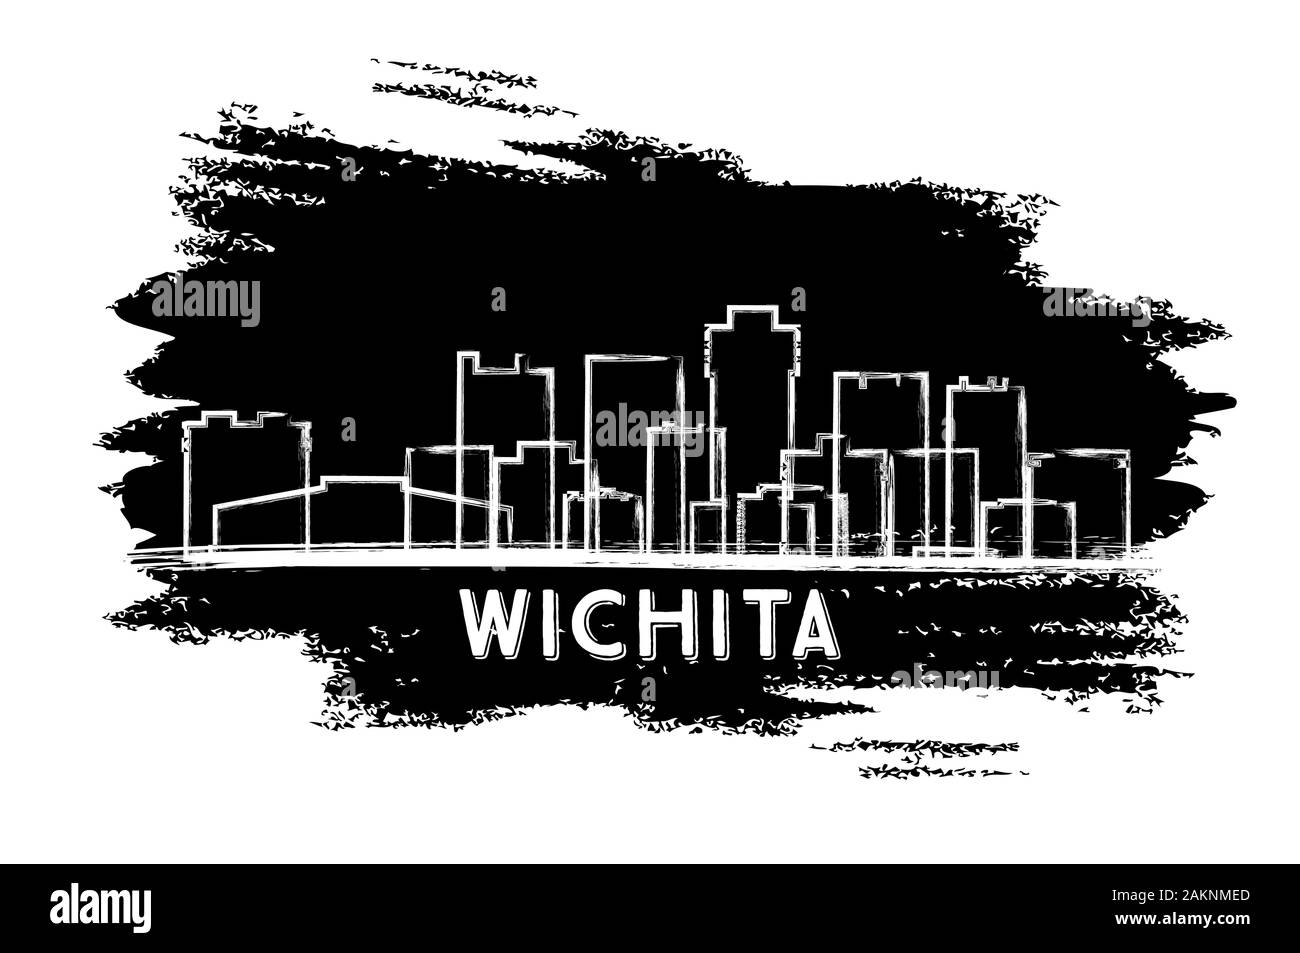 Wichita Kansas City Skyline Silhouette. Hand gezeichnete Skizze. Vector Illustration. Business Travel und Tourismus Konzept mit historischer Architektur. Stock Vektor